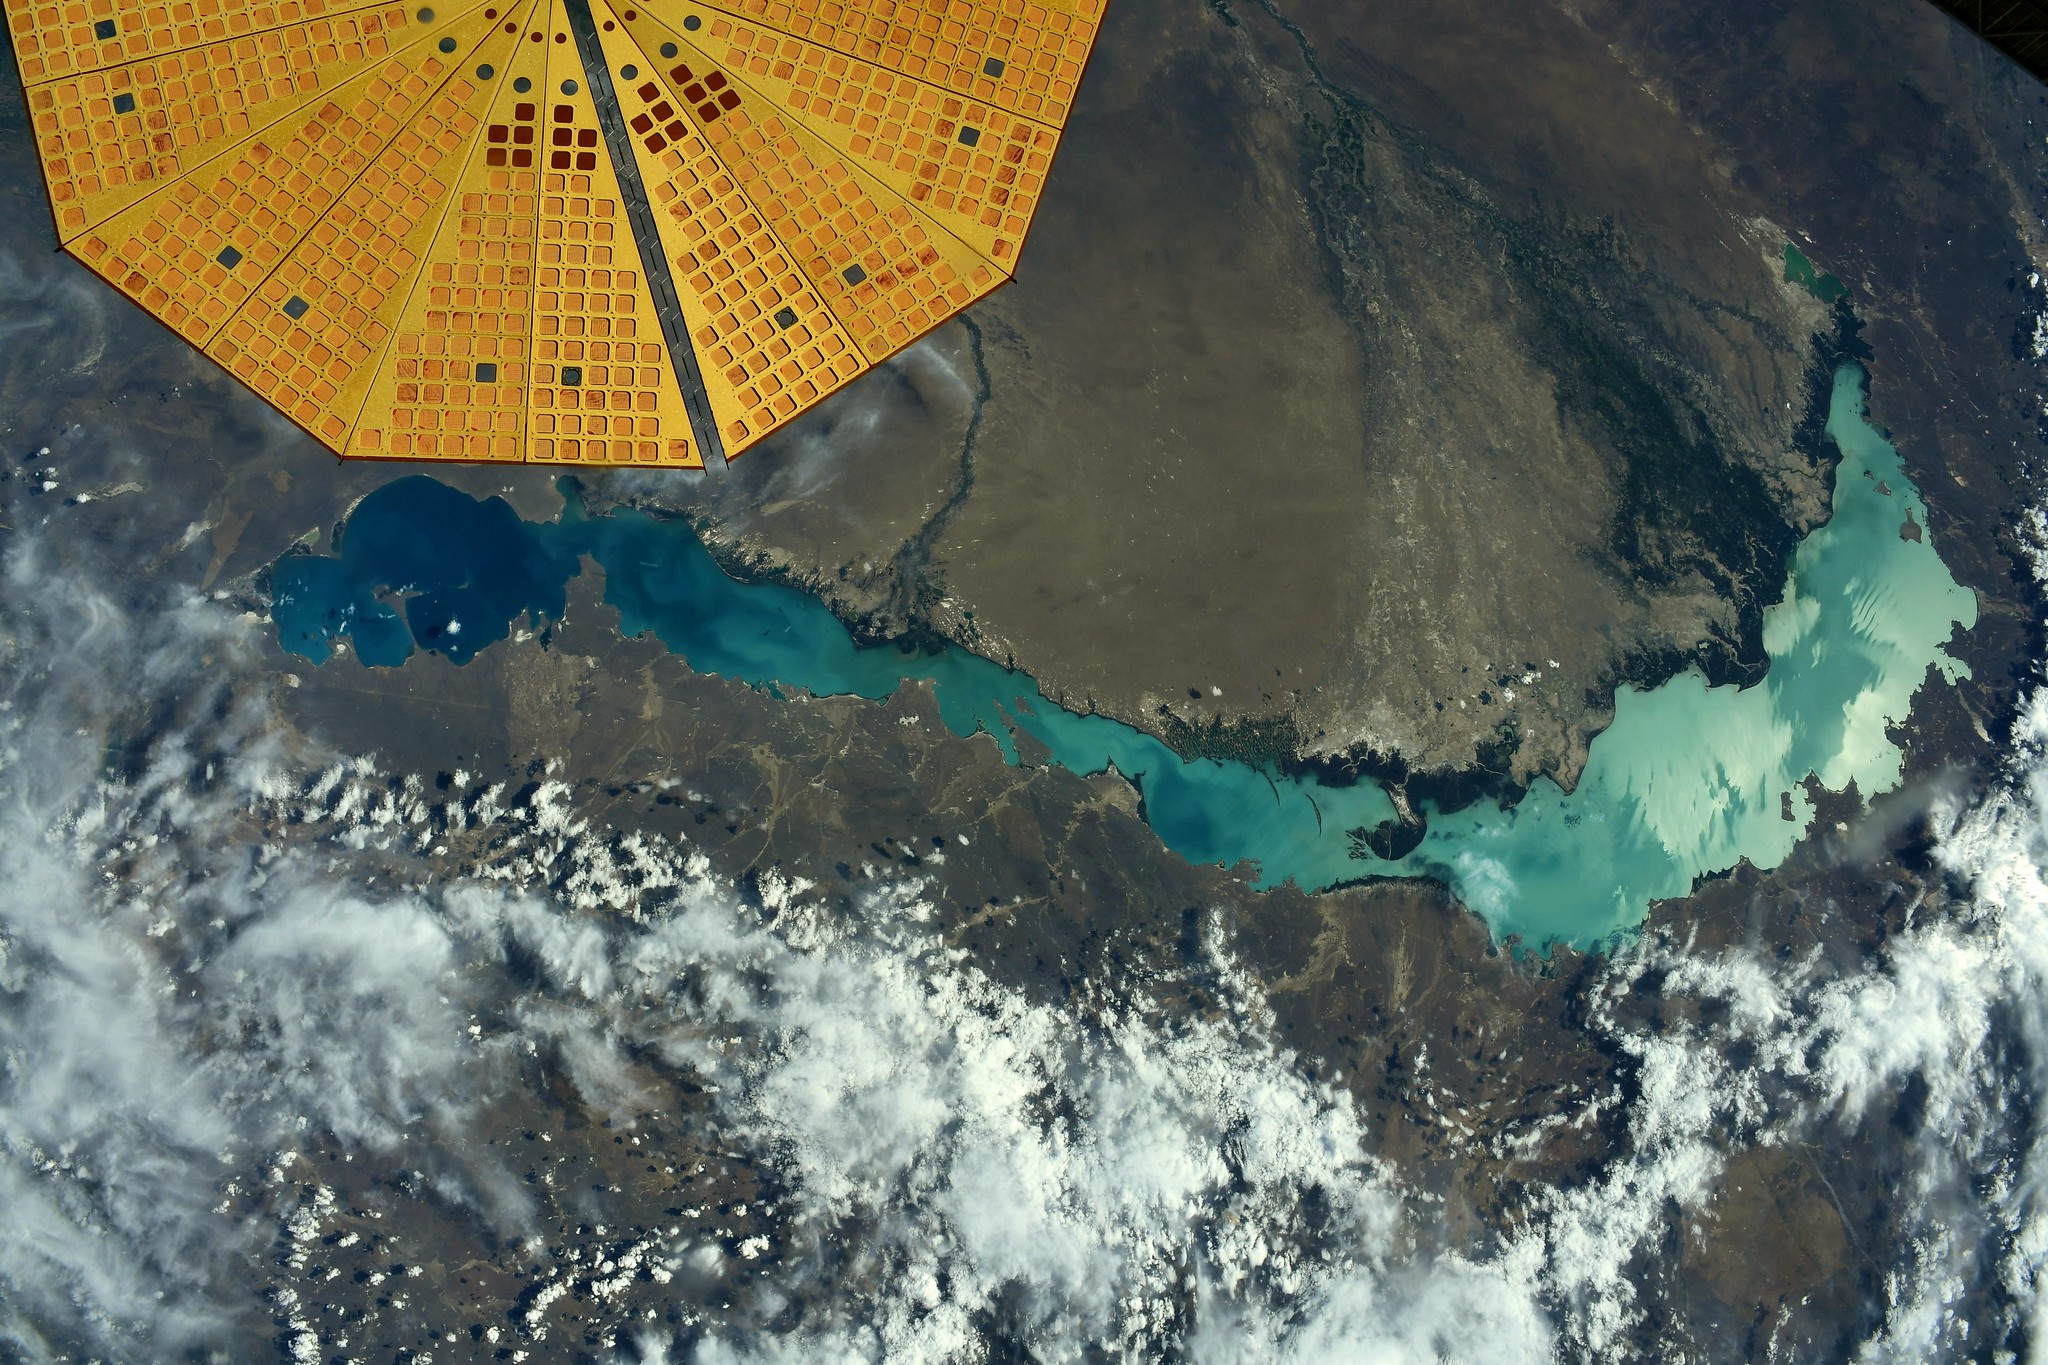 Mise à jour de l'astronaute français qui pensait&nbsp;prendre en photo le lac Baïkal : « C'était le mauvais lac ! Il s'agit du lac Balkhach au Kazakhstan ». © ESA/Nasa–Thomas&nbsp;Pesquet